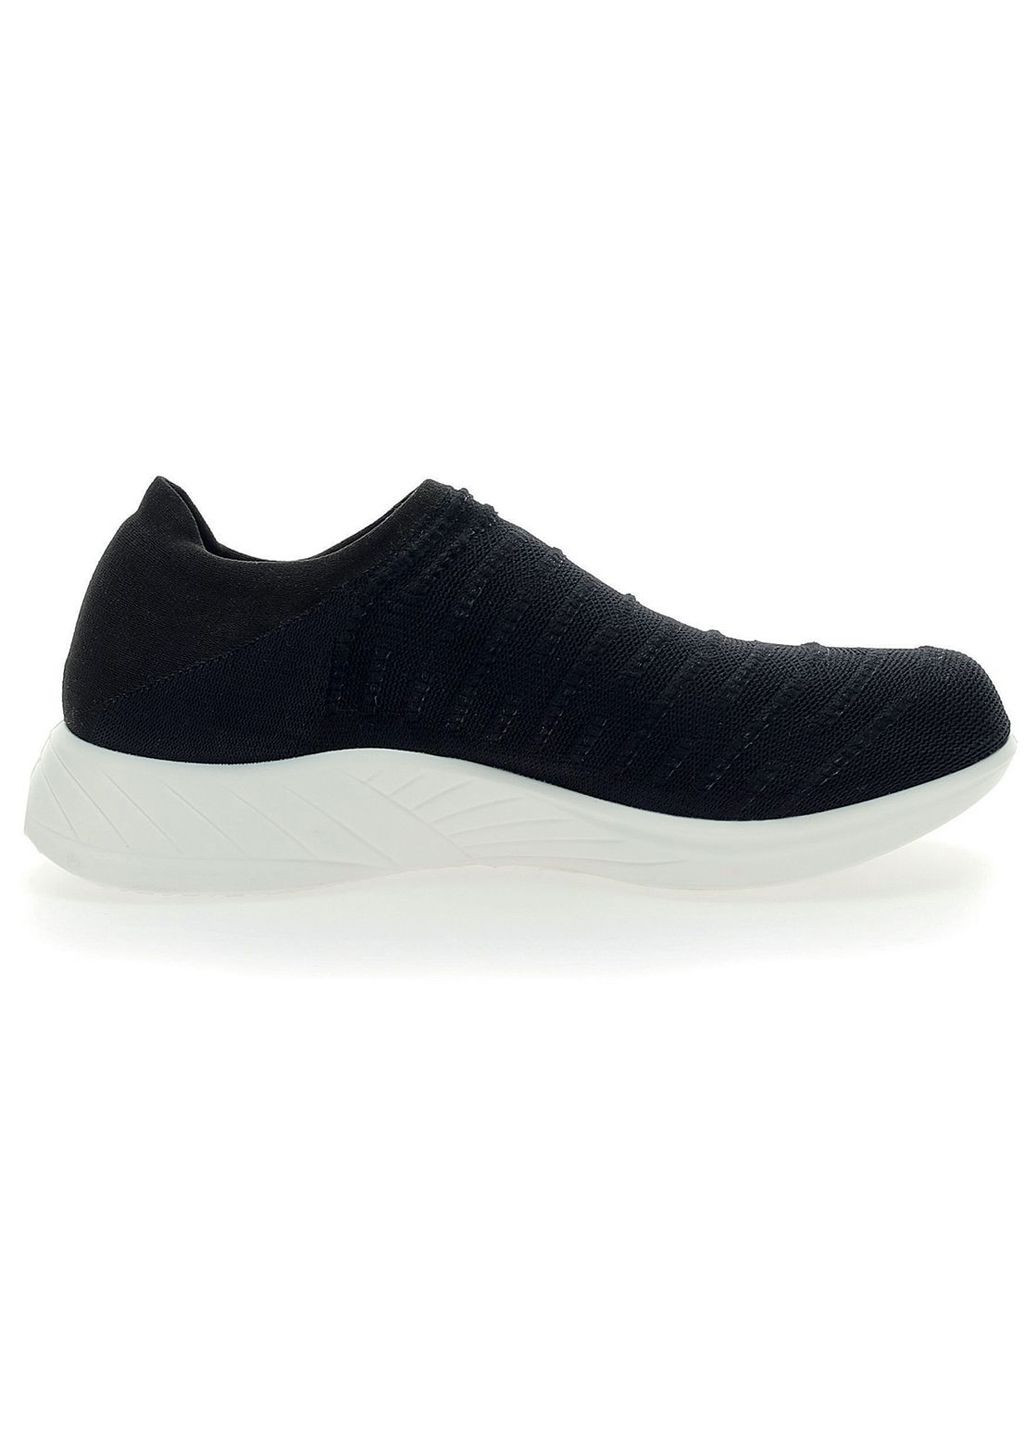 Чорні кросівки жіночі UYN 3D RIBS B036 Black/Charcoal